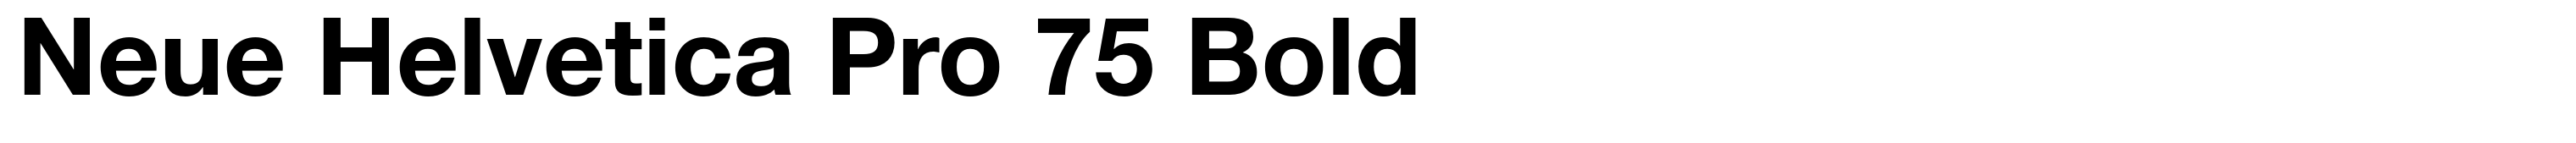 Neue Helvetica Pro 75 Bold